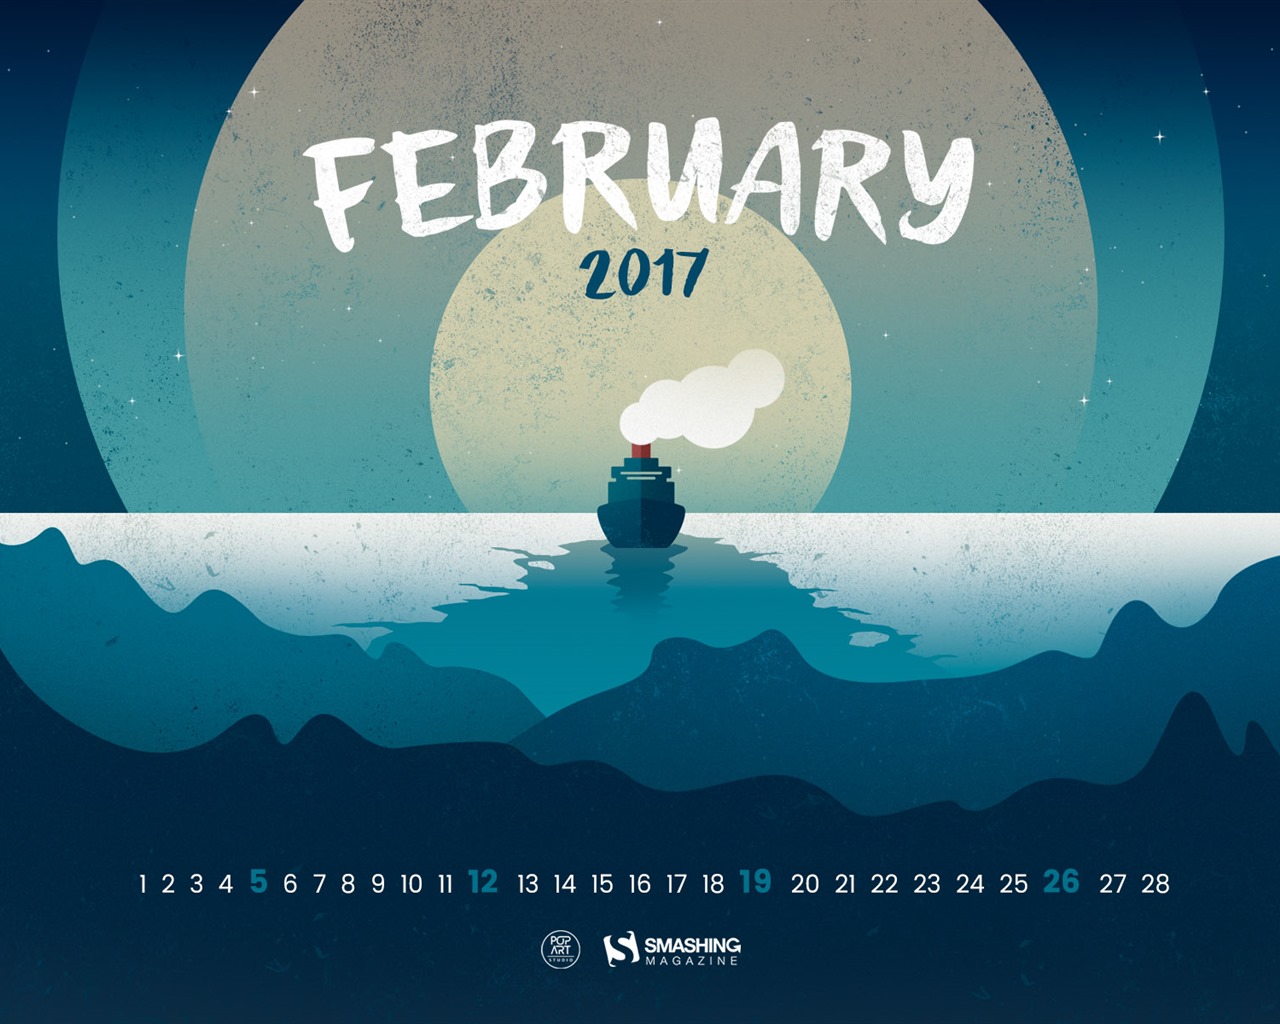 February 2017 calendar wallpaper (2) #2 - 1280x1024